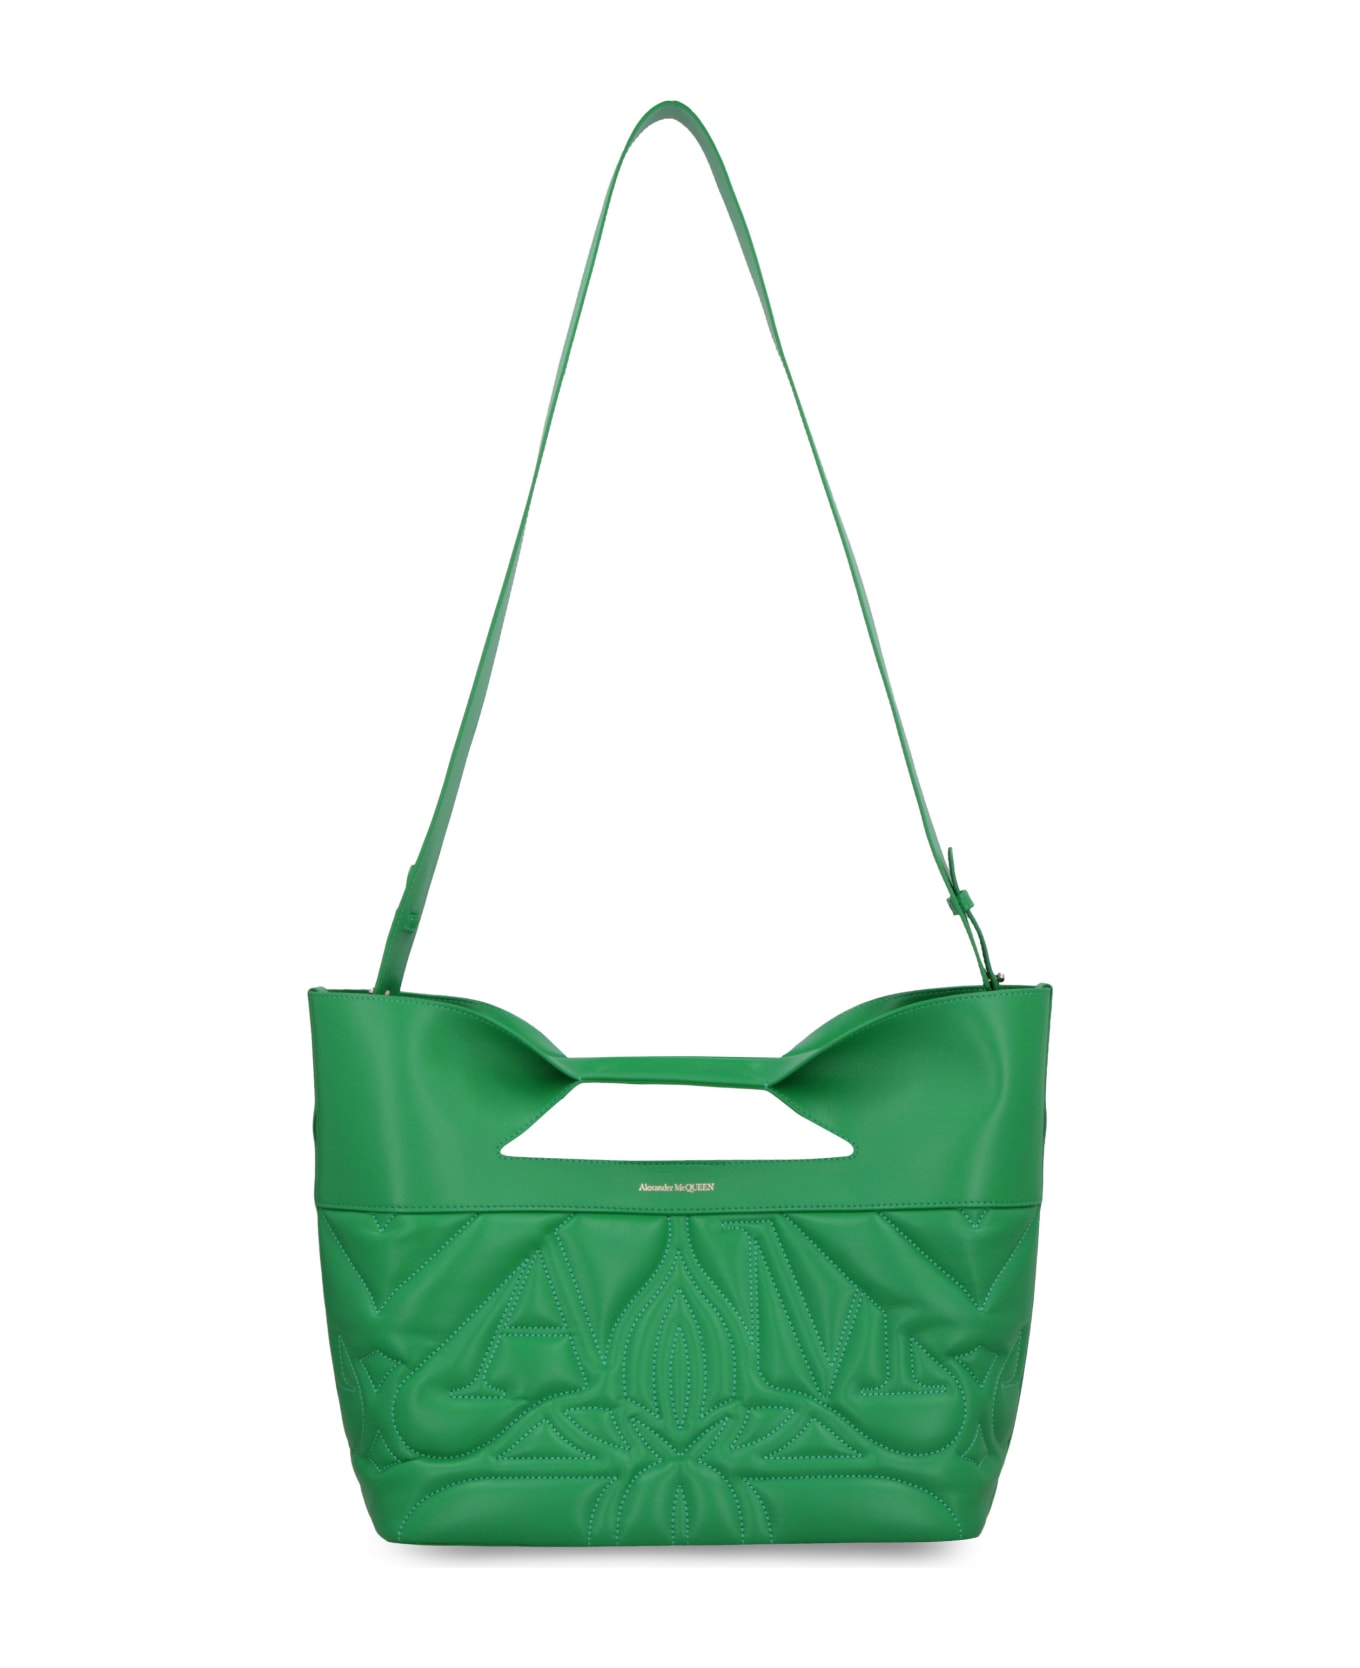 Alexander McQueen The Bow Handbag - green